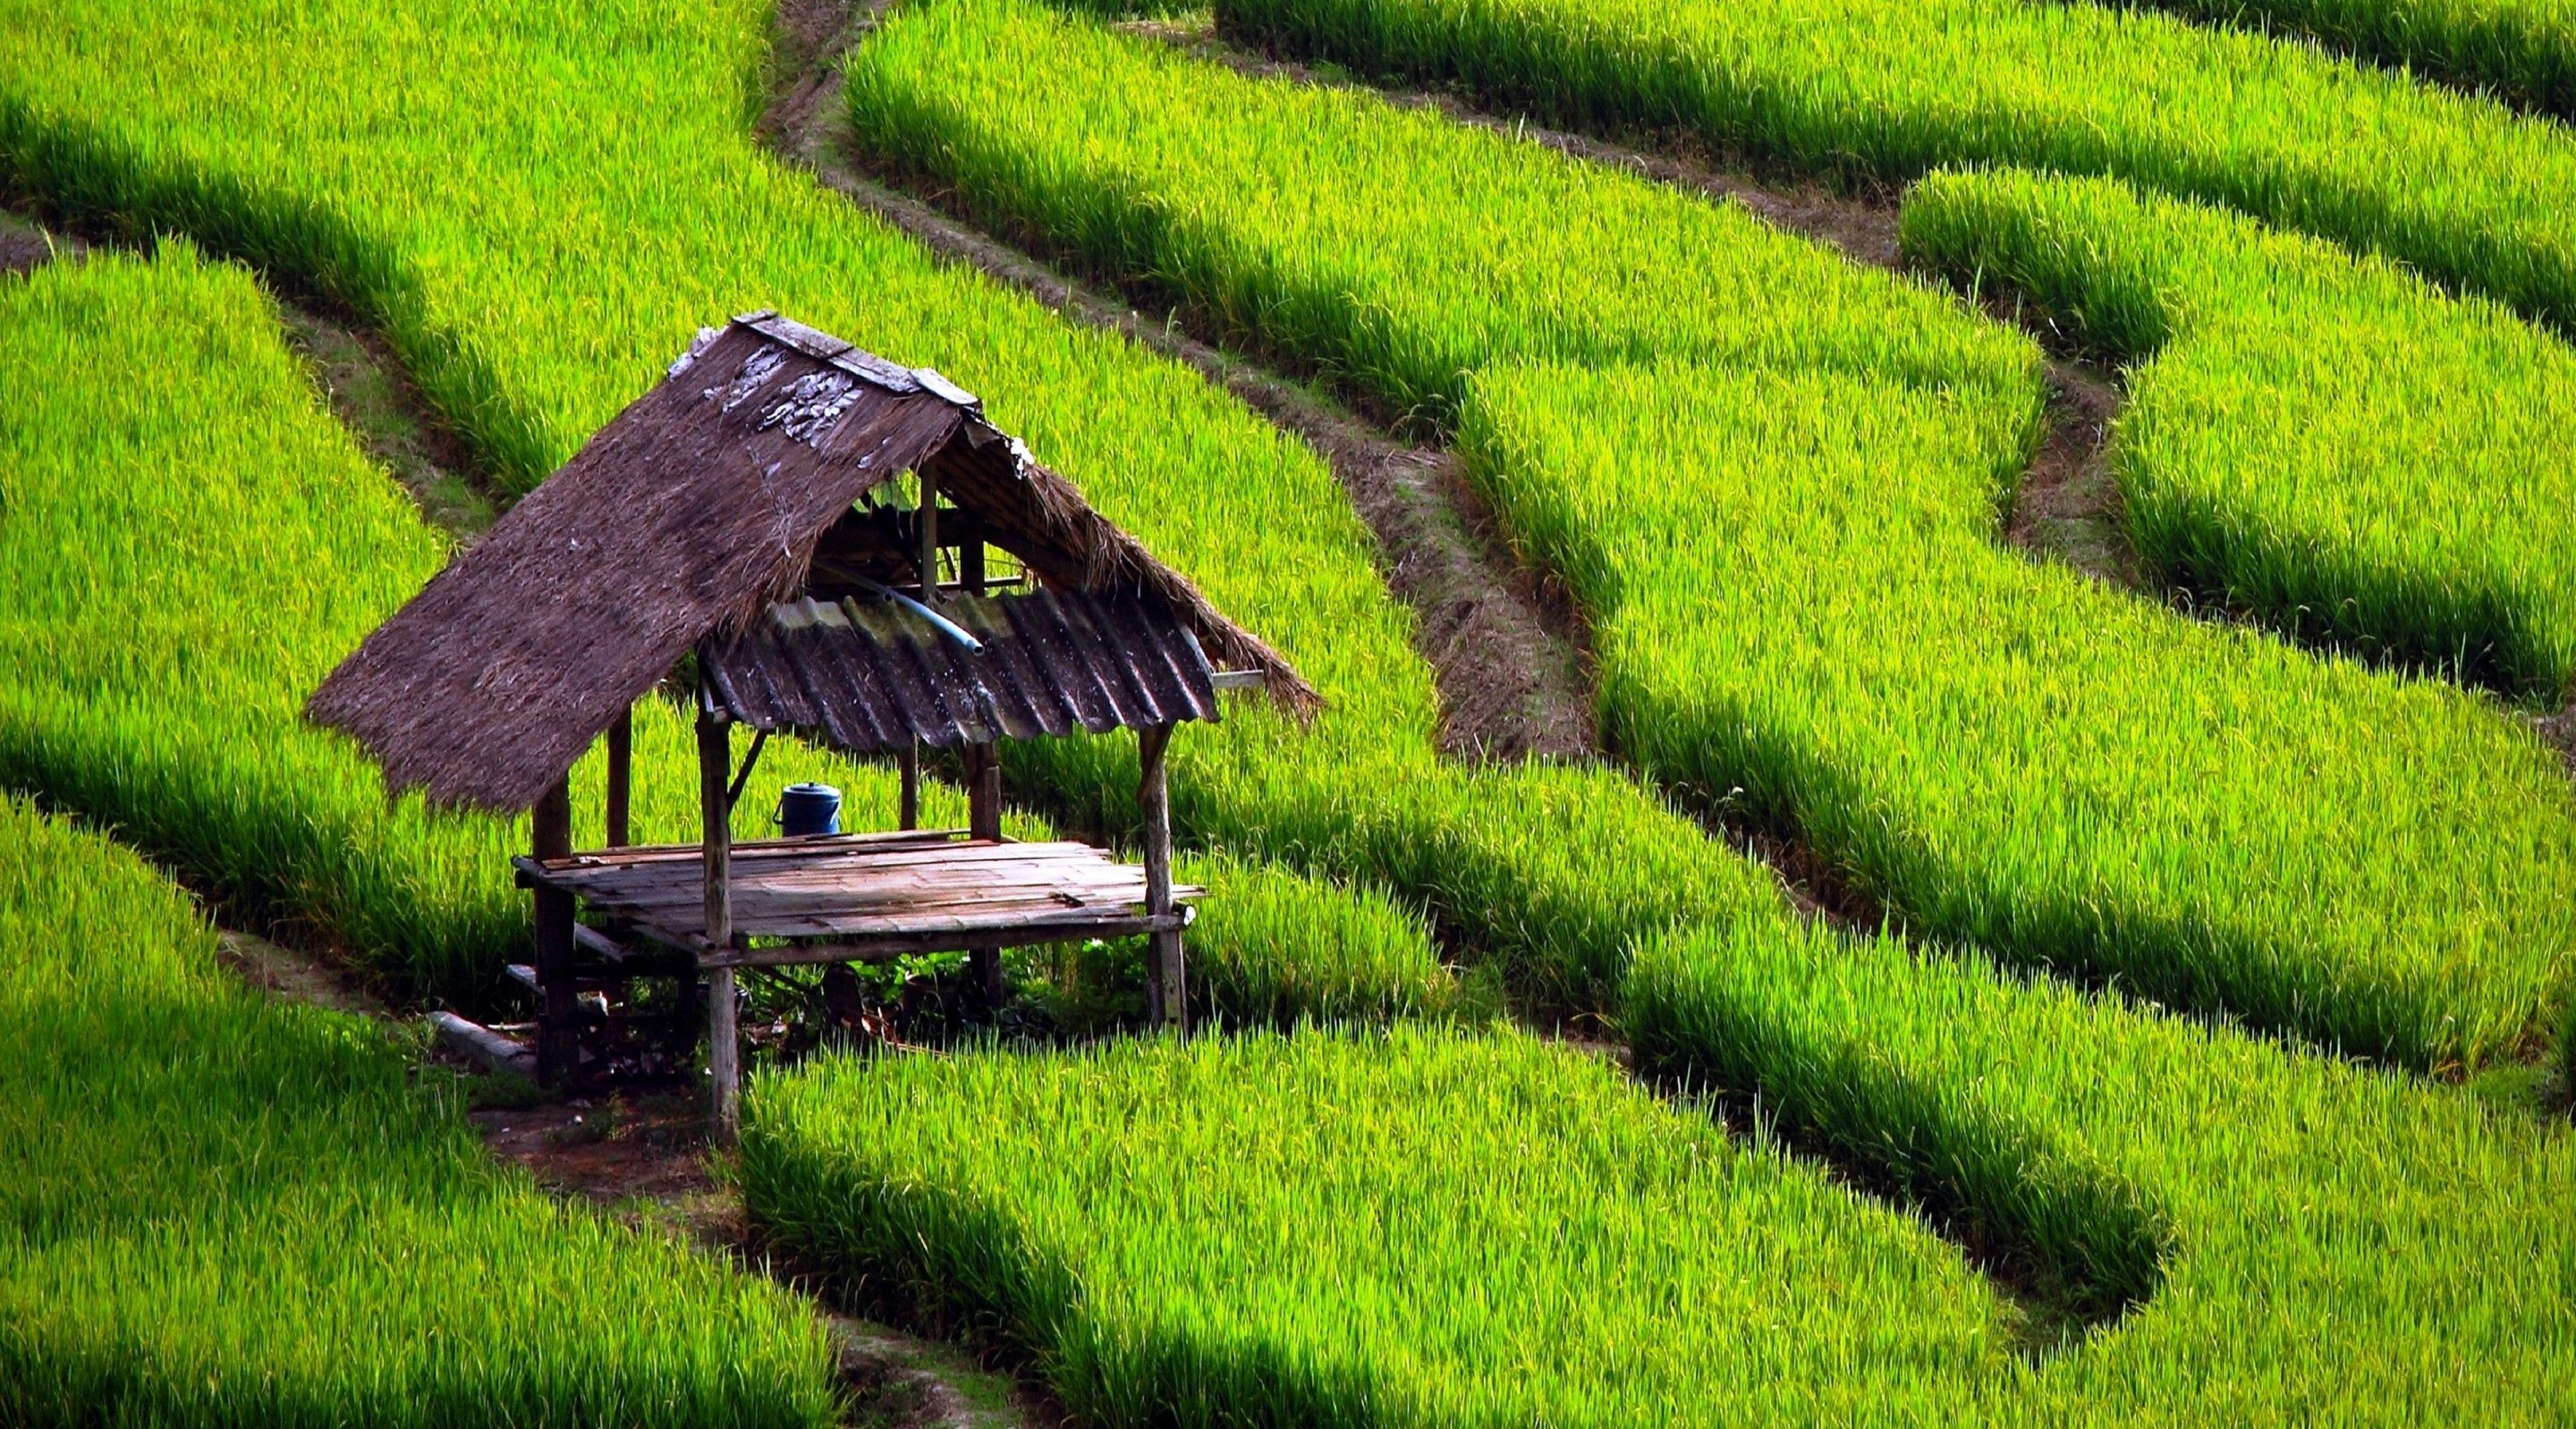 A hut inside green rice fields. Landscape wallpaper, Landscape